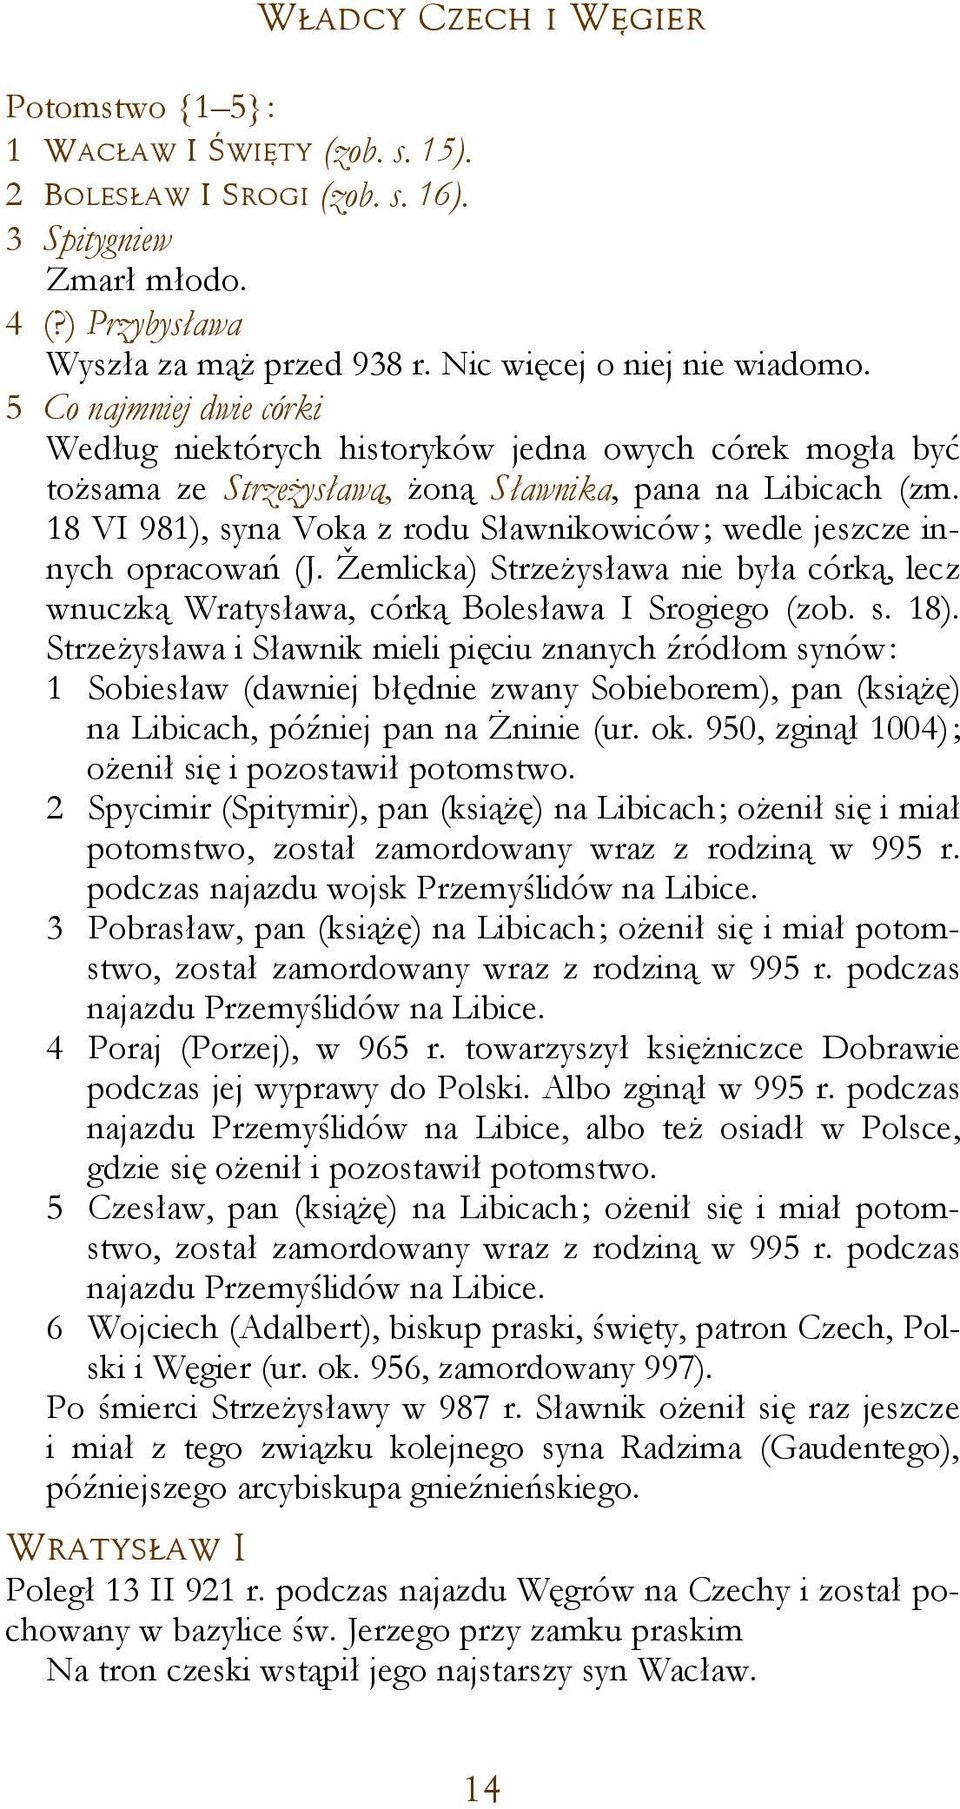 18 VI 981), syna Voka z rodu Sławnikowiców; wedle jeszcze innych opracowań (J. Žemlicka) Strzeżysława nie była córką, lecz wnuczką Wratysława, córką Bolesława I Srogiego (zob. s. 18).